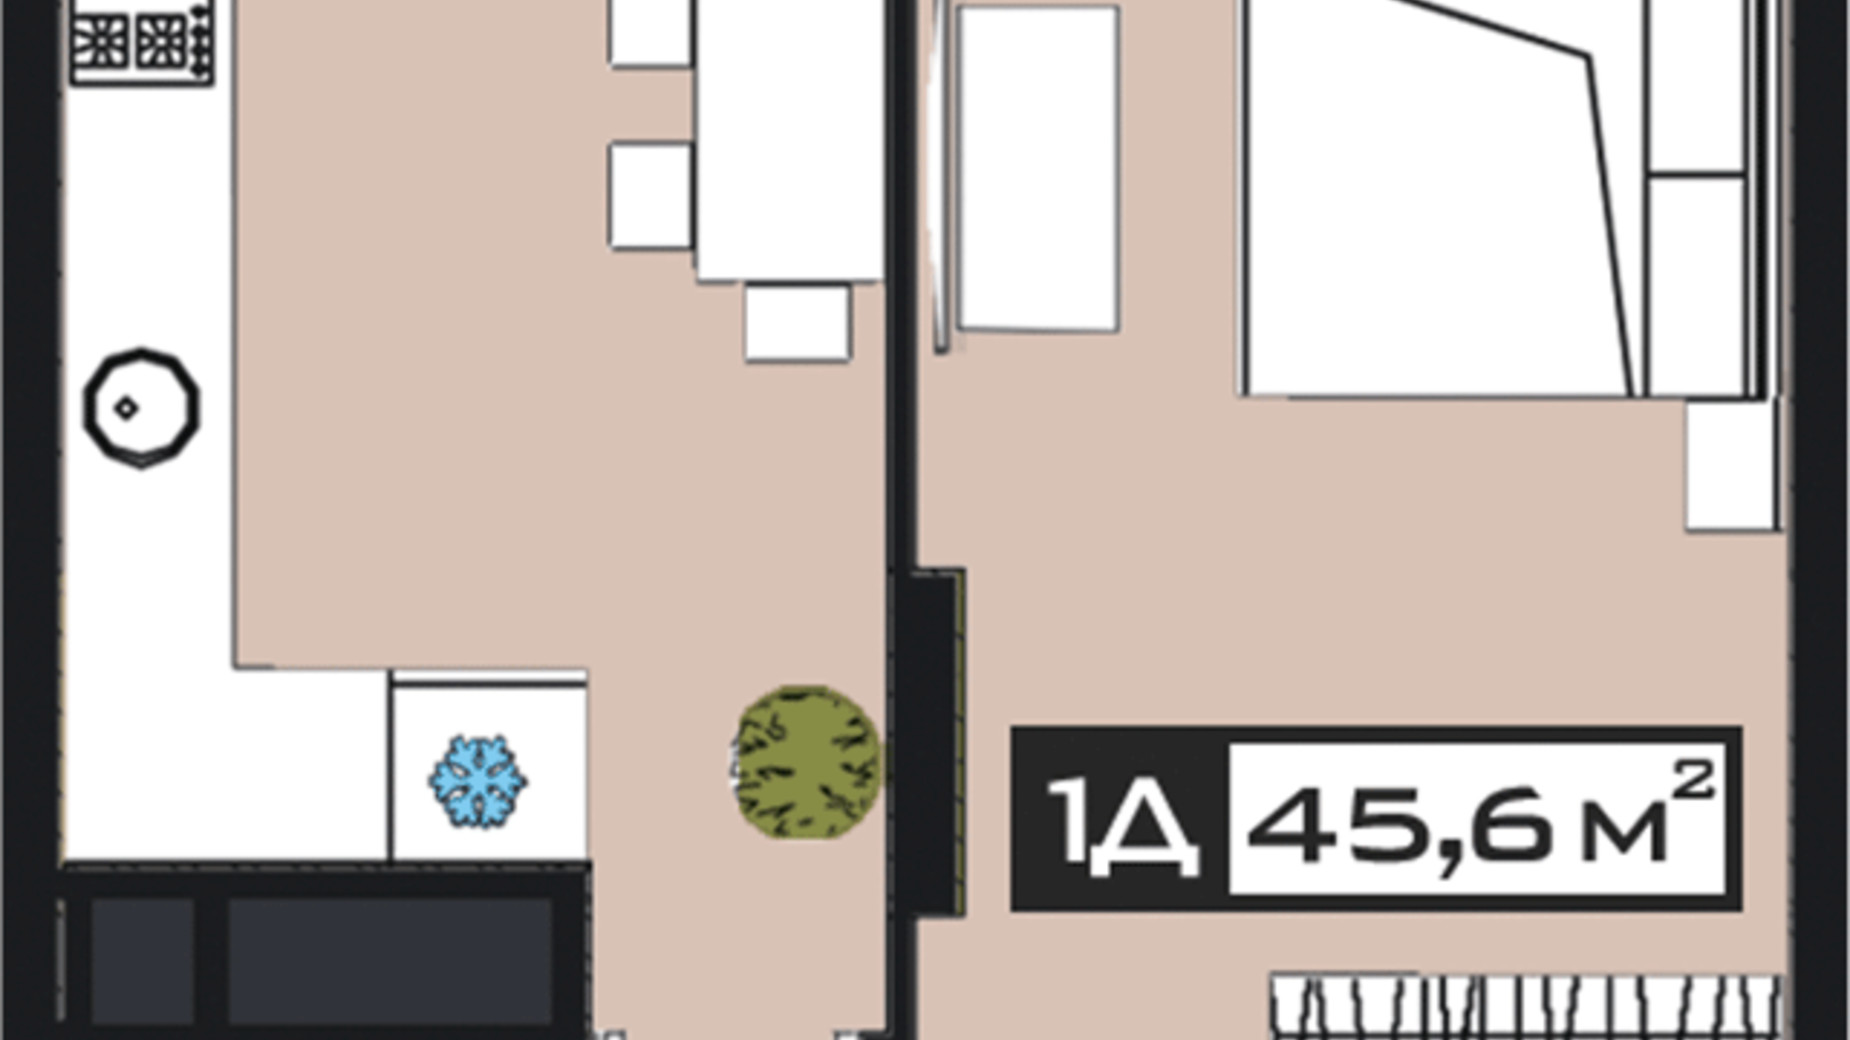 Планировка 1-комнатной квартиры в ЖК Peyot 45.6 м², фото 592972